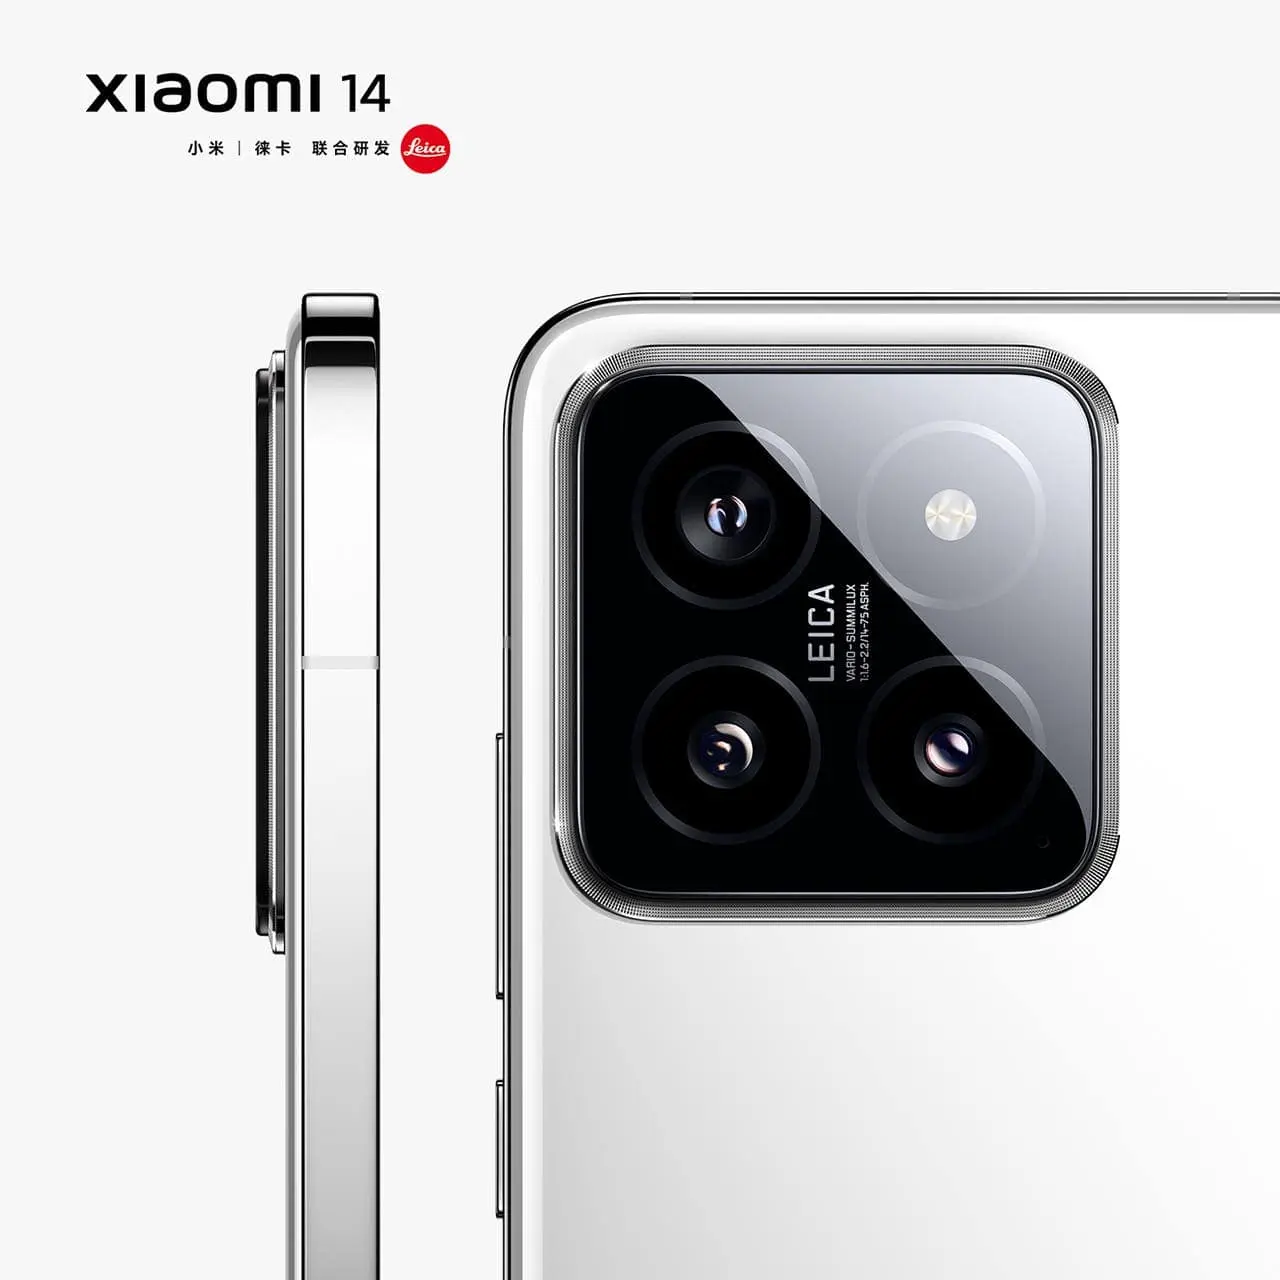 Imagem mostra detalhes de câmera do Xiaomi 14